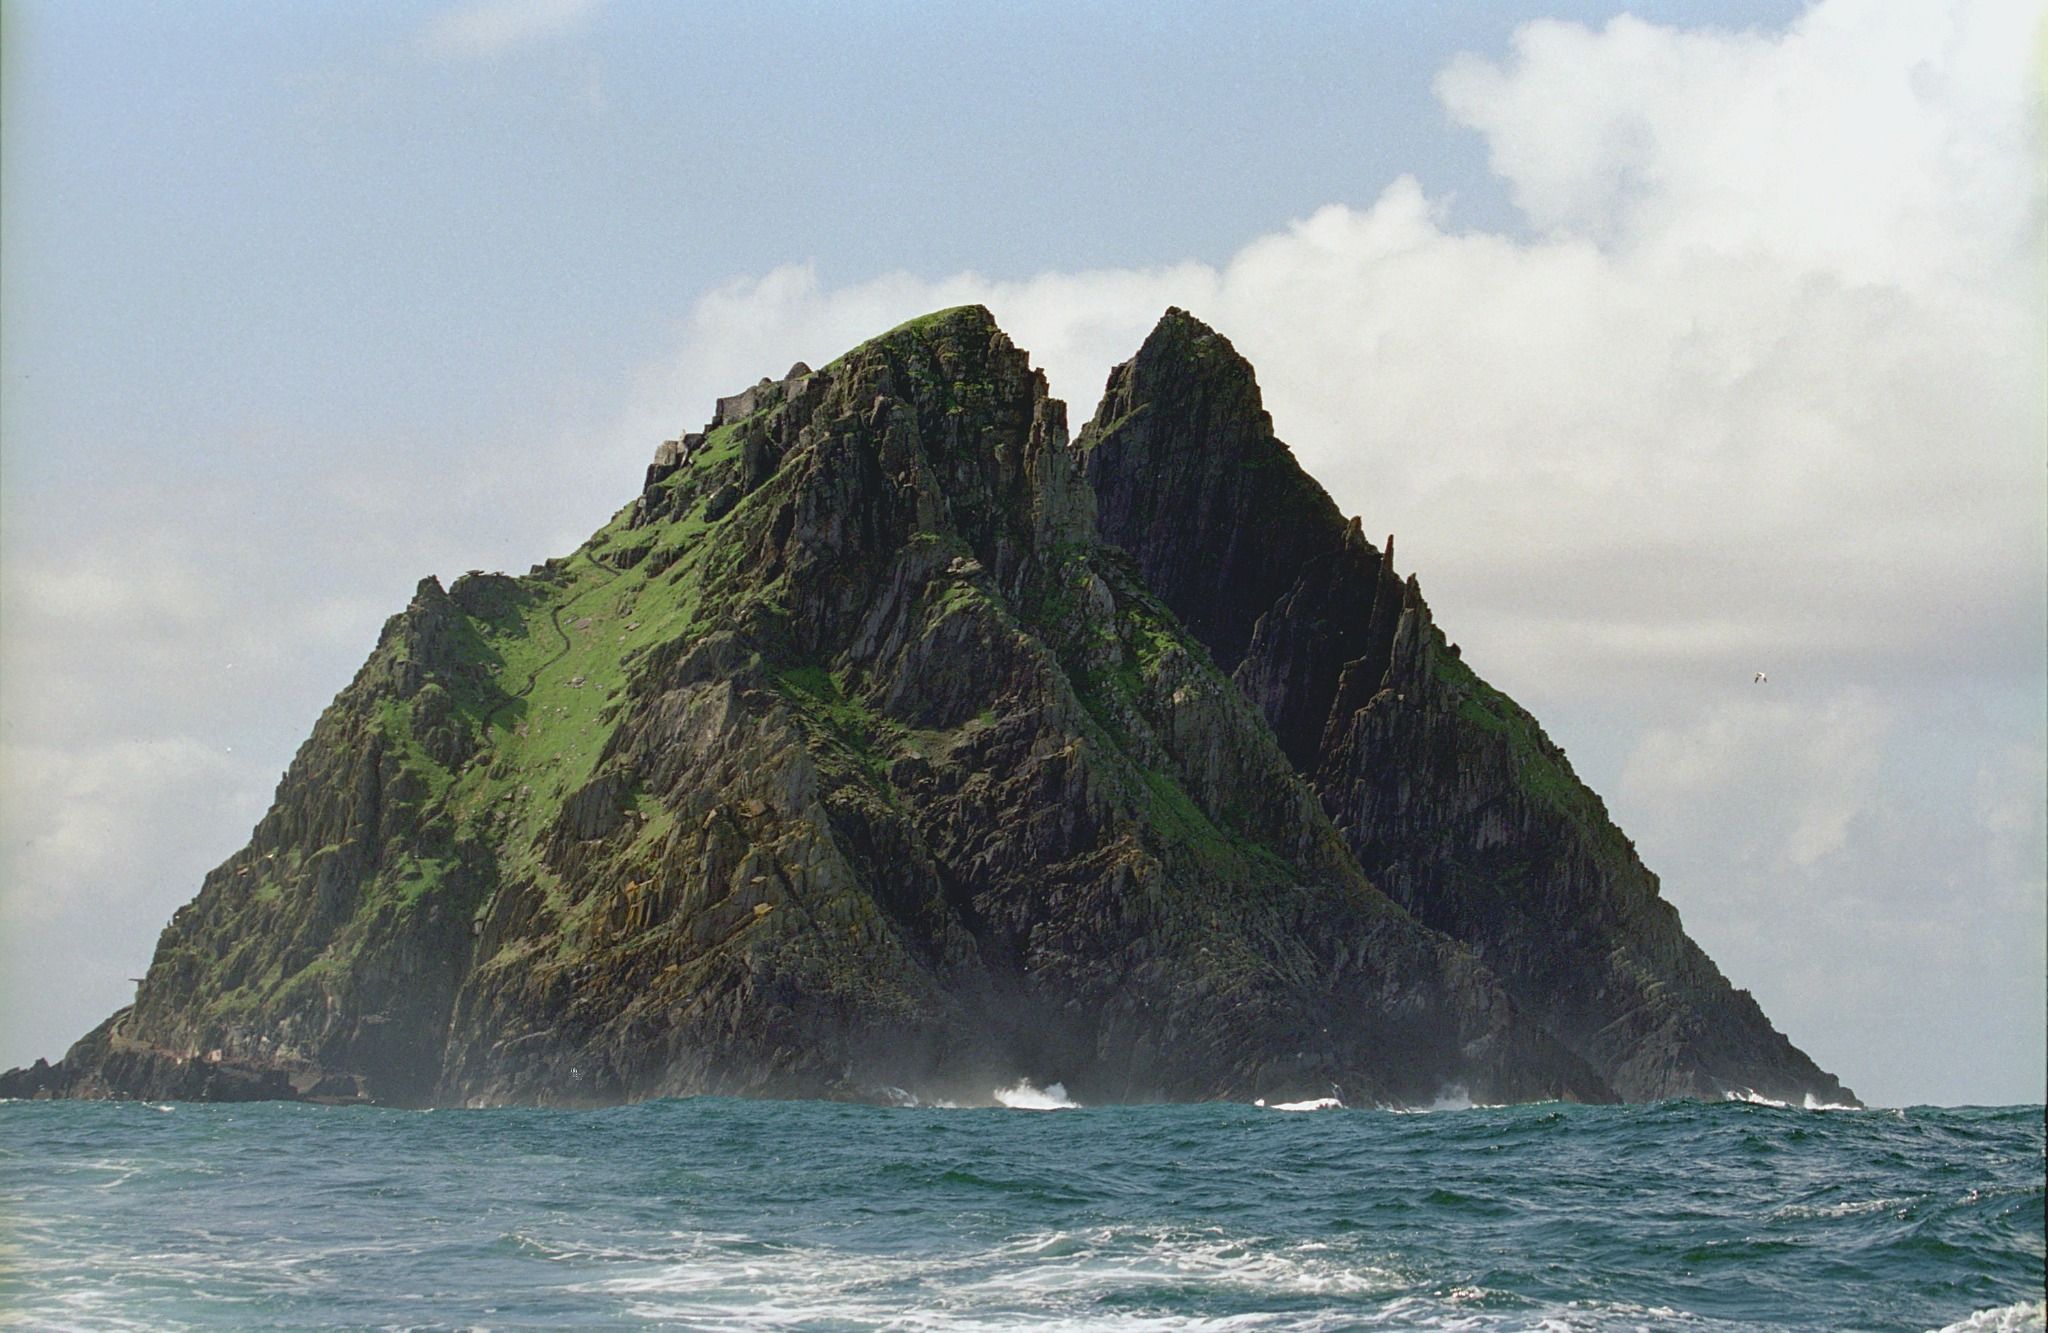 View of Wild Atlantic Way in Ireland